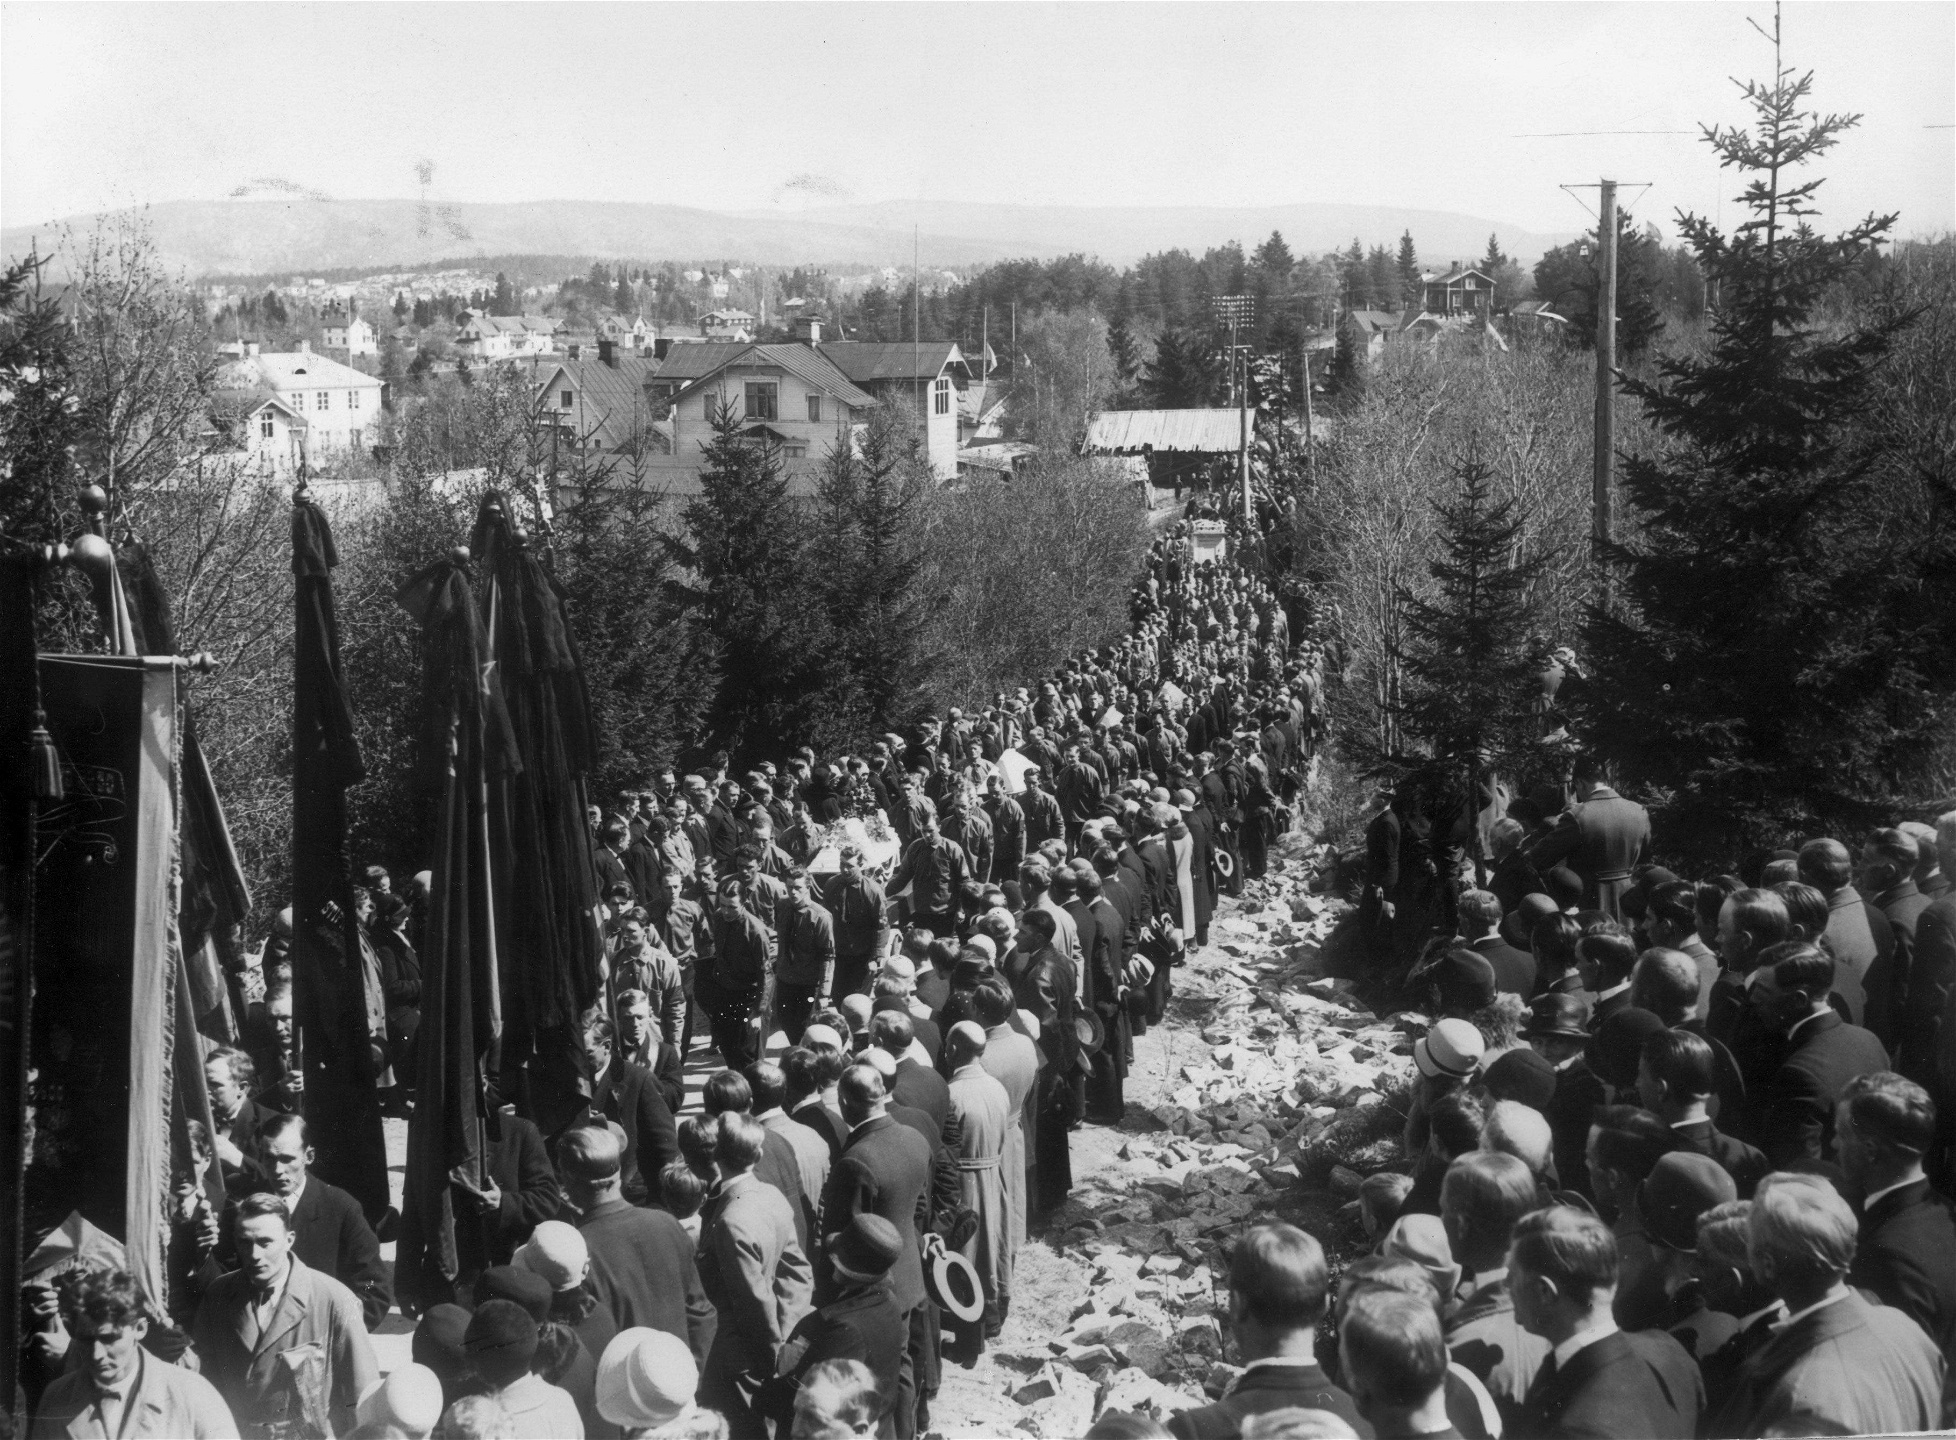 Begravningsföljet efter skotten i Ådalen sträcker sig längs en grankantad väg där många åskådare finns vid vägkanten.